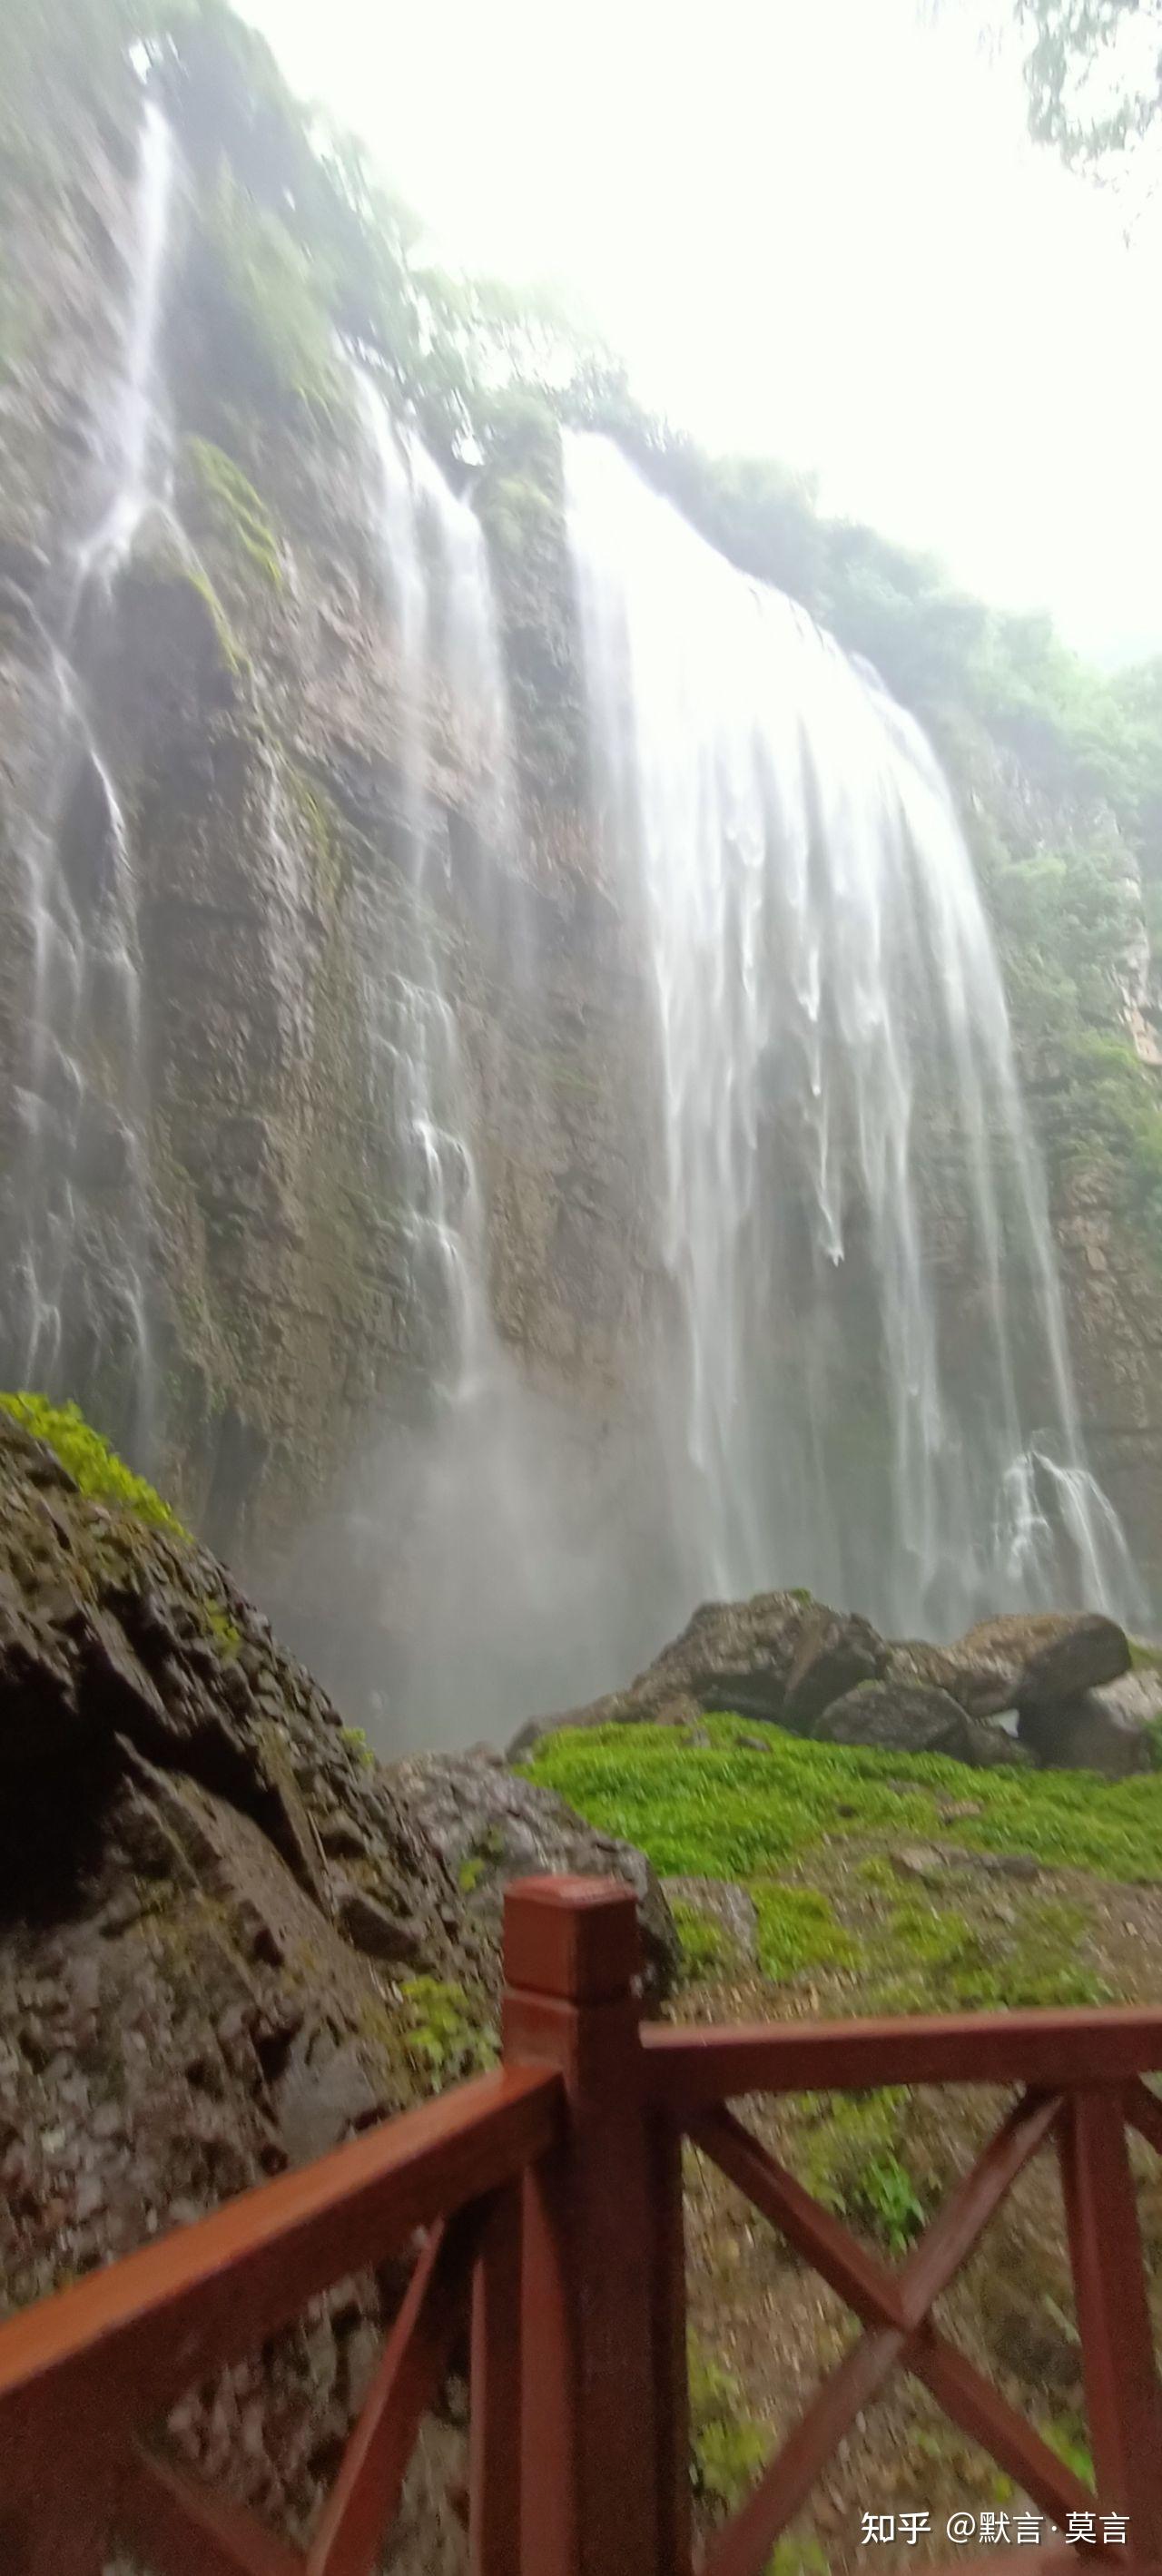 【高清图】高山流水之三峡大瀑布-中关村在线摄影论坛